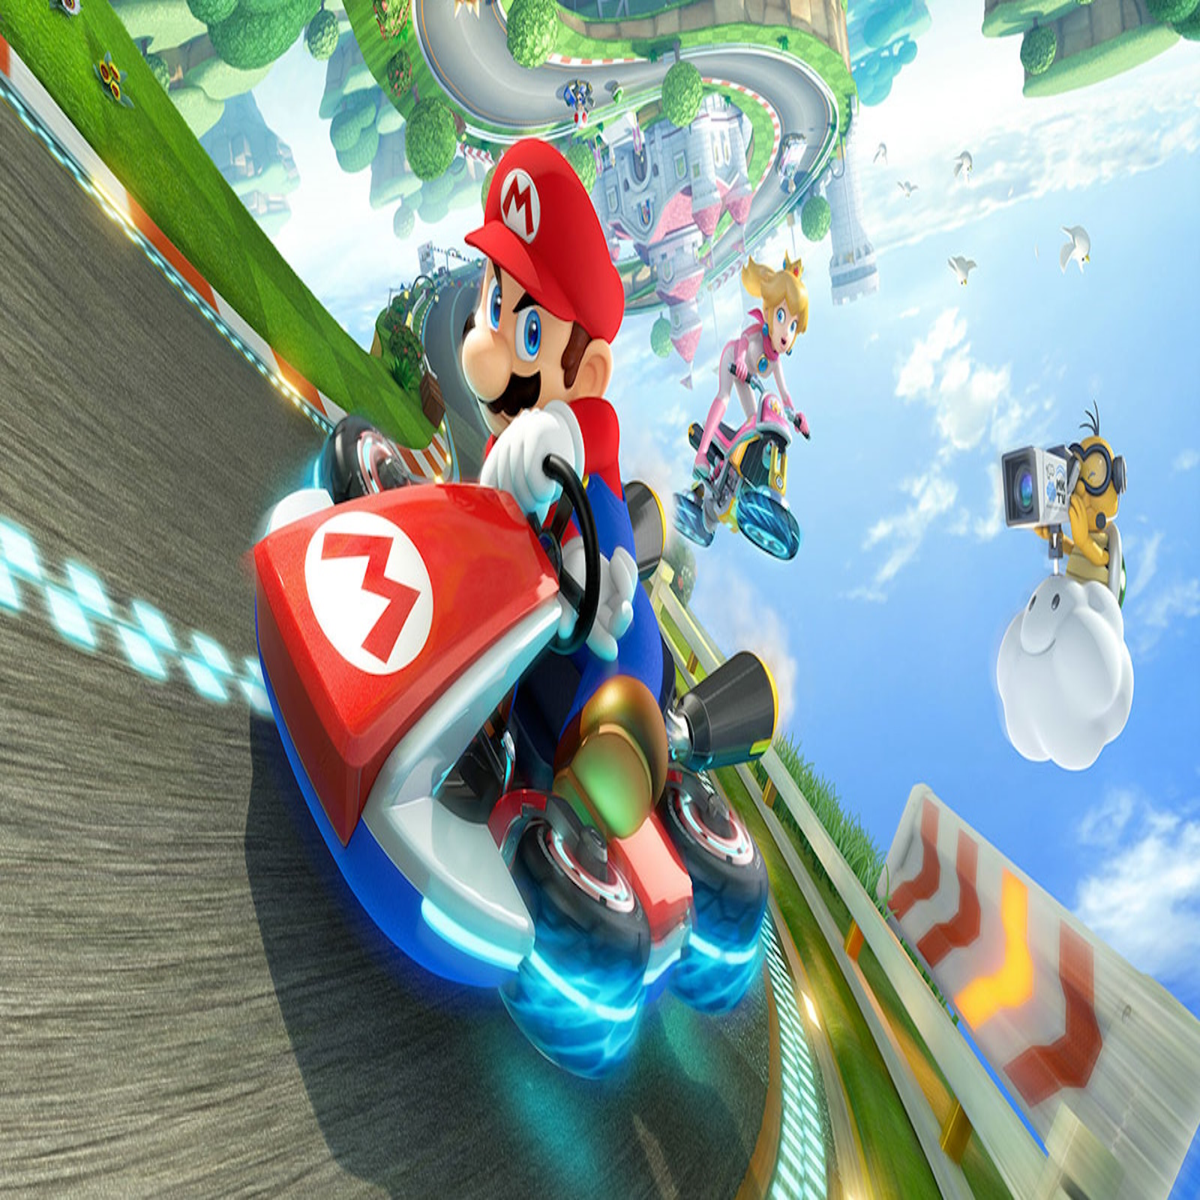 Mario Kart 8 Deluxe Nintendo Switch Lite Gameplay 